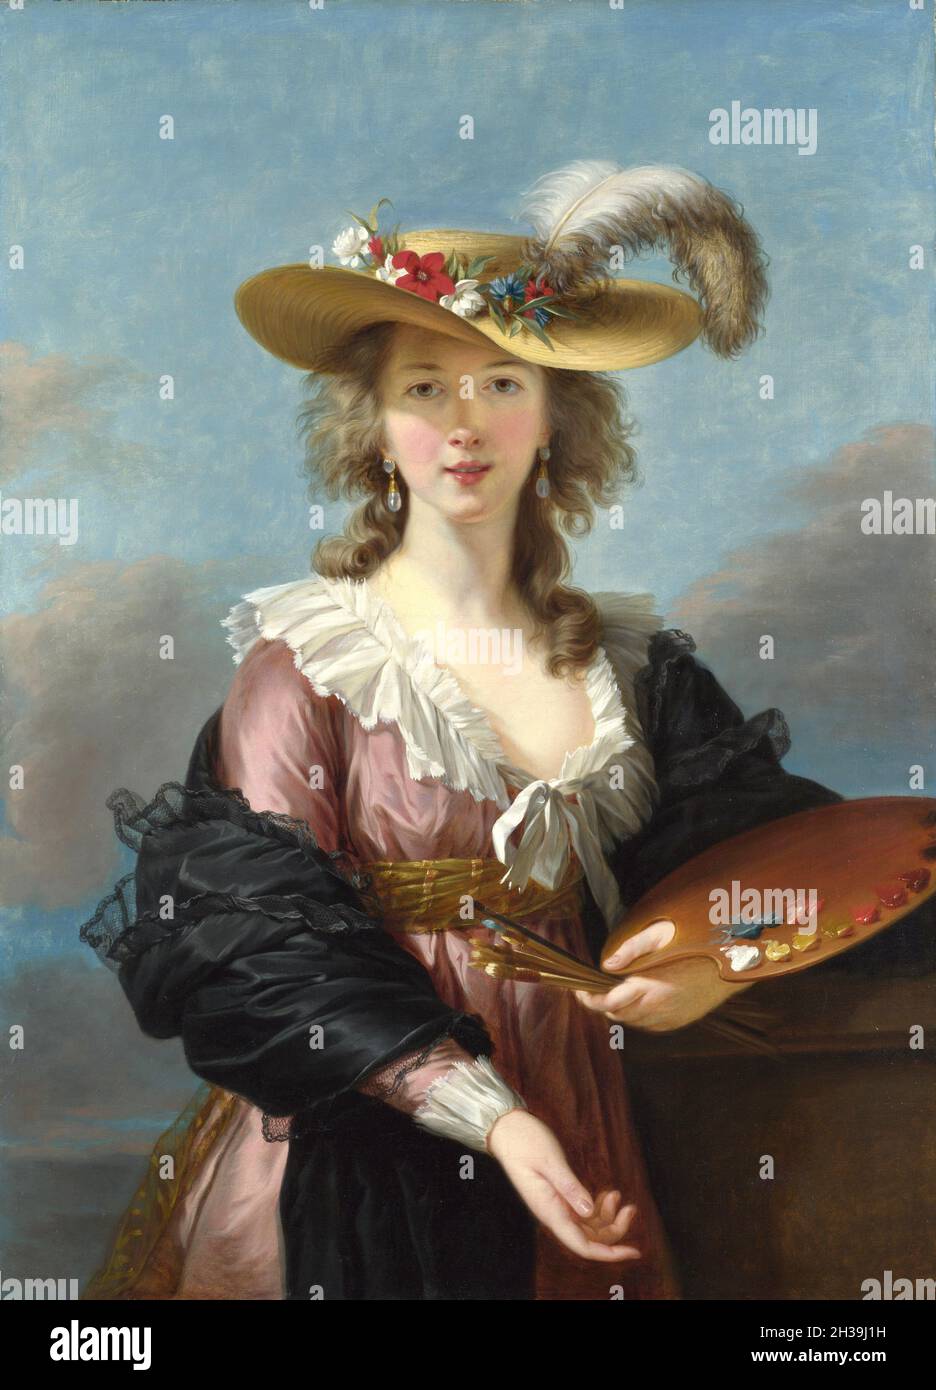 Selbstporträt im Strohhut - Élisabeth Louise Vigée Le Brun, (Madame Le Brun) war eine prominente französische Porträtmalerin des späten 18. Jahrhunderts. Stockfoto